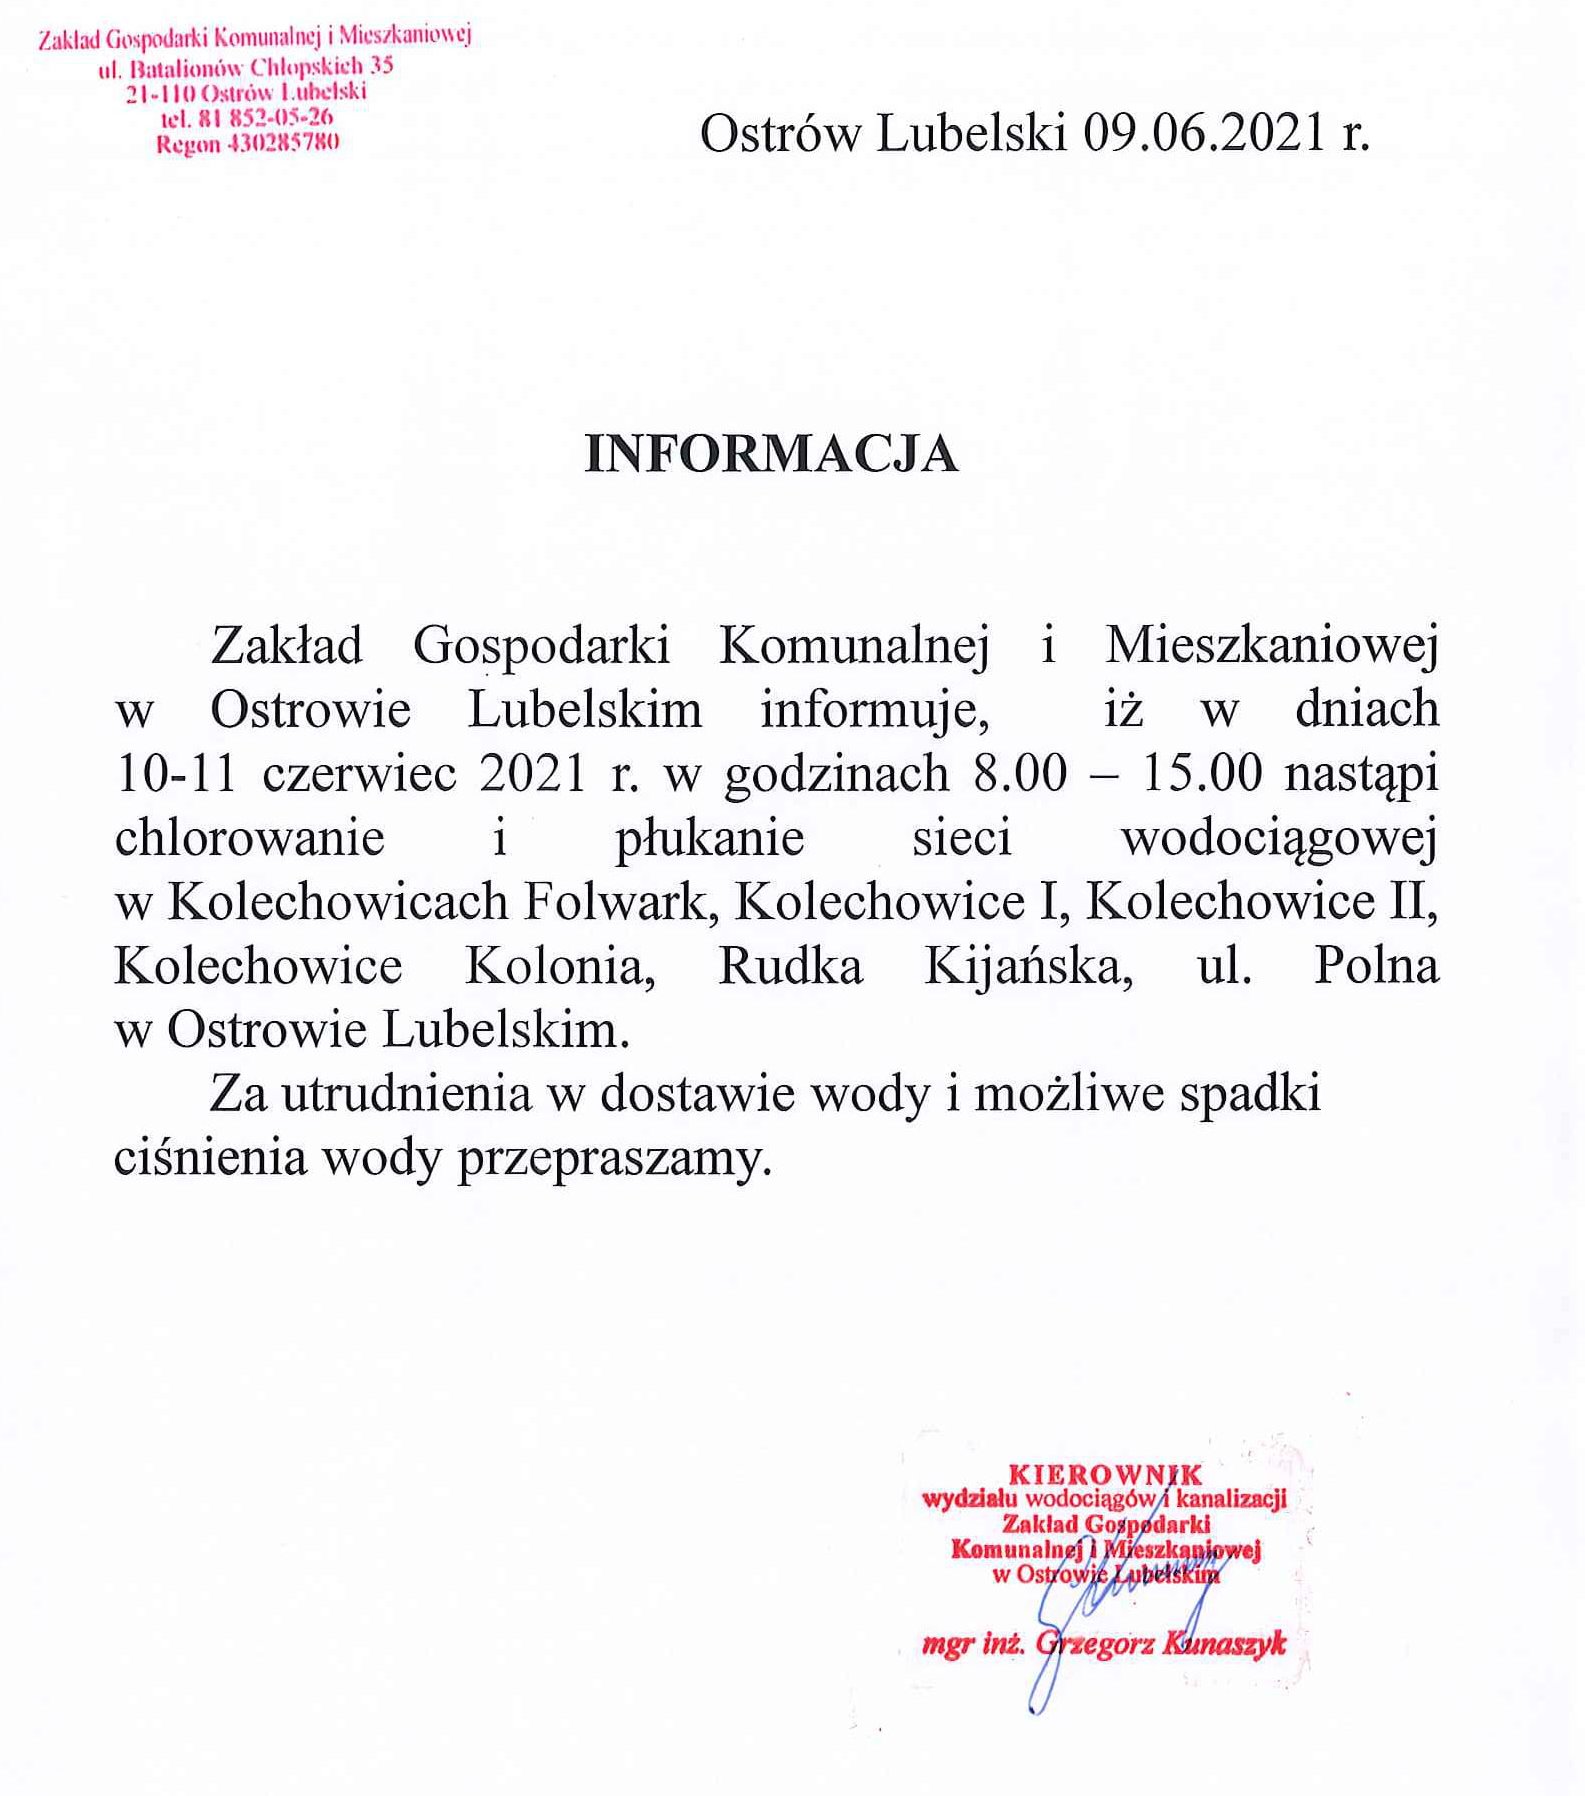 Informacja płukanie sieci w Kolechowicach